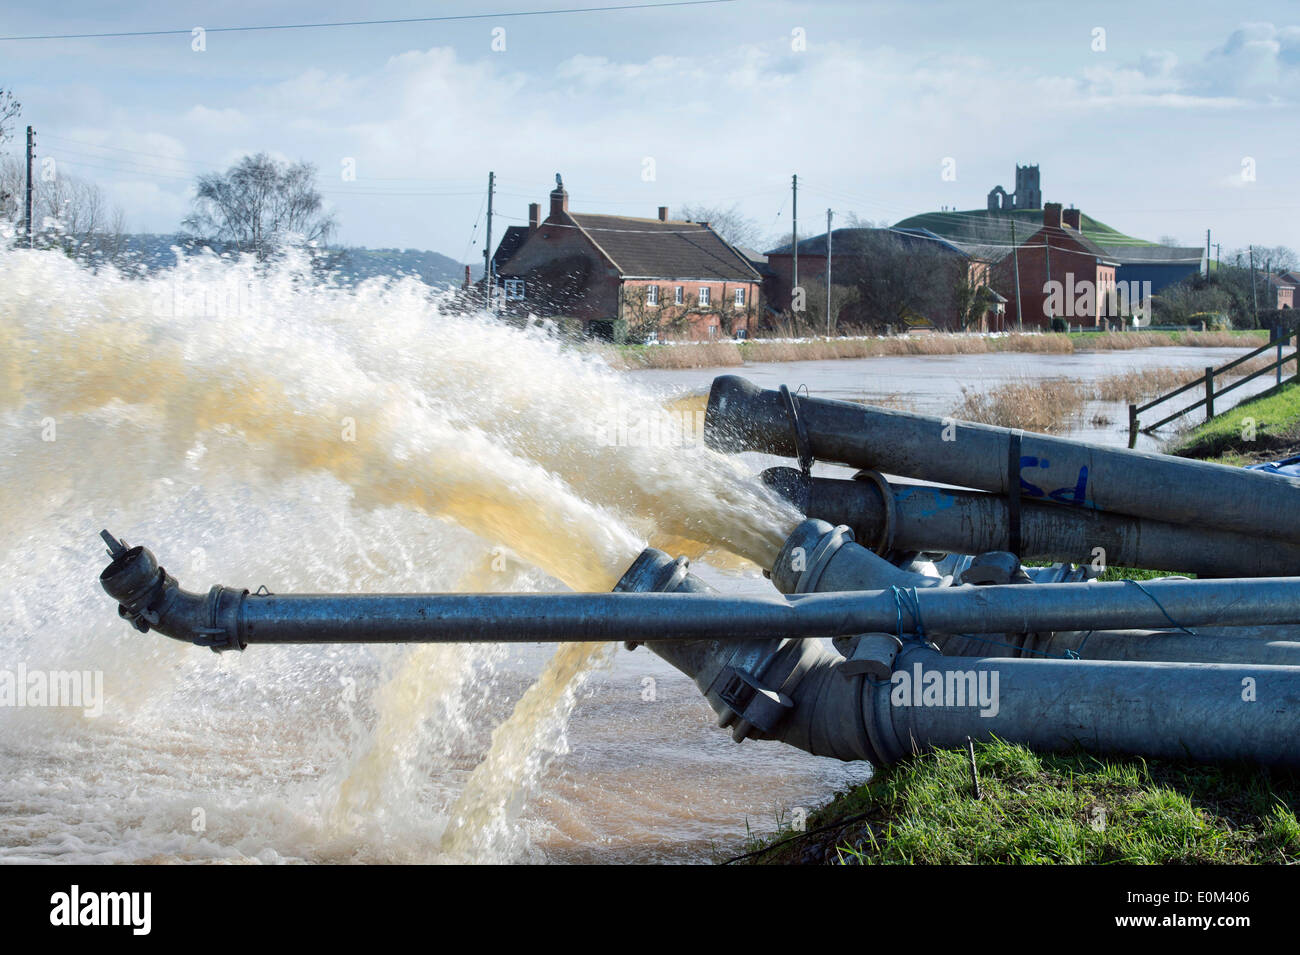 Les inondations sur les Somerset Levels - inondation, l'eau pompée dans la rivière Parrett près de Burrowbridge UK Mars 2014 Banque D'Images